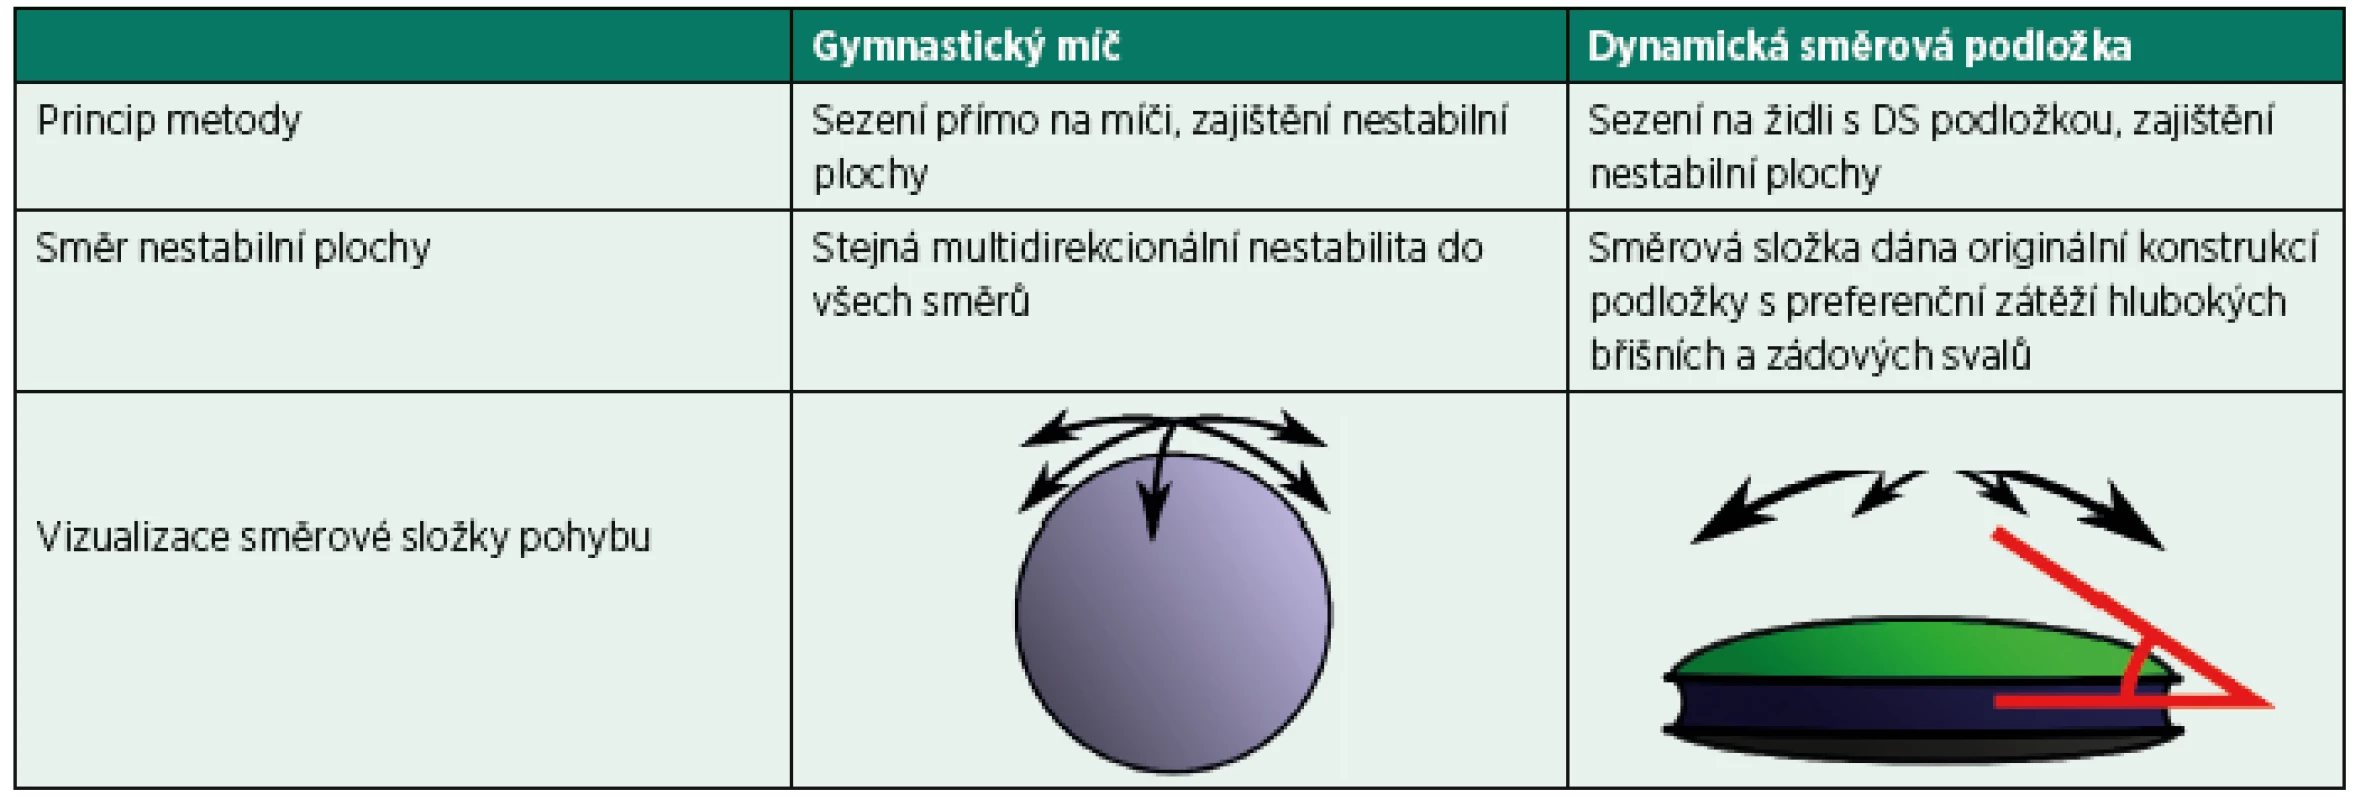 Porovnání principu gymnastické ho míče a dynamické směrové podložky při sedu v rámci rehabilitace při bolestech bederní páteře.